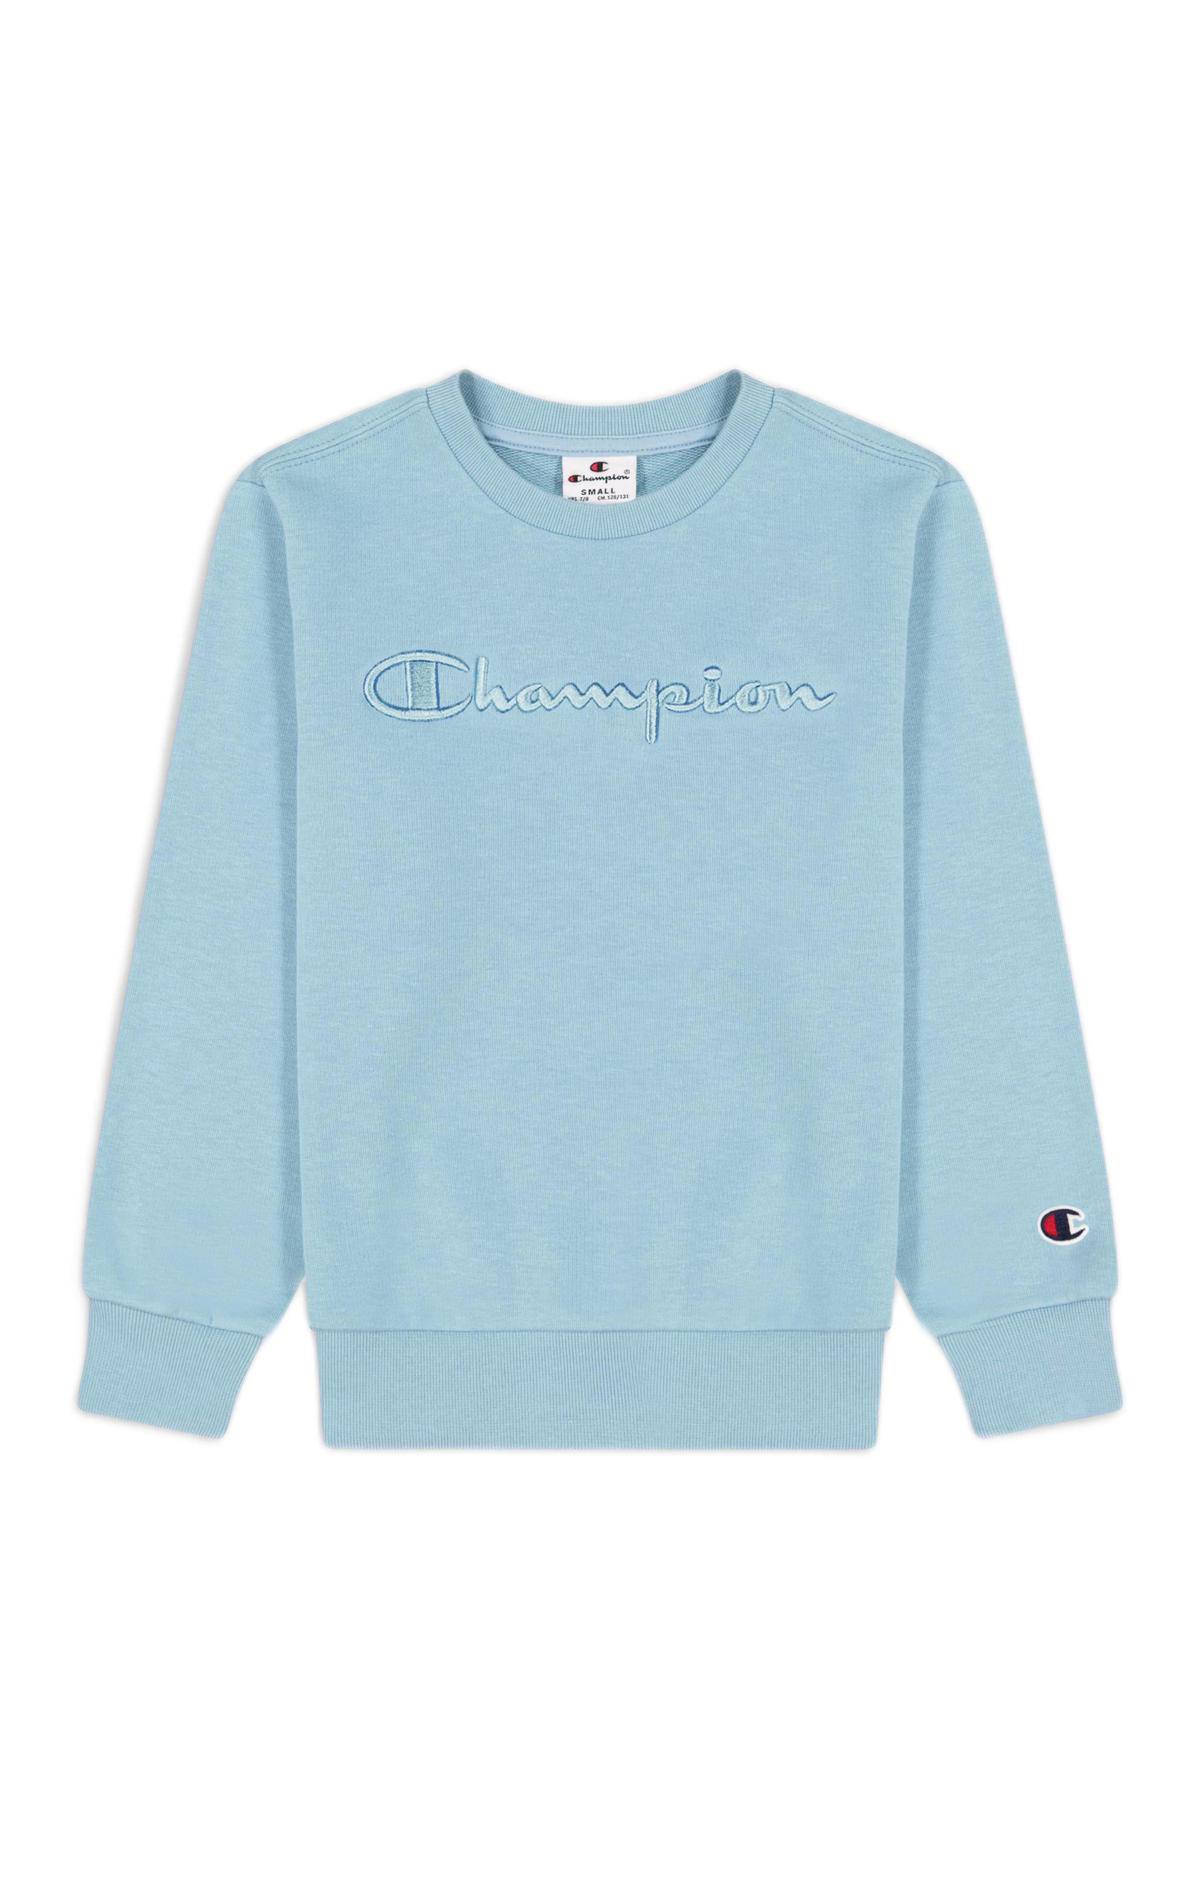 domesticeren storm experimenteel Champion sweater met logo blauw | wehkamp